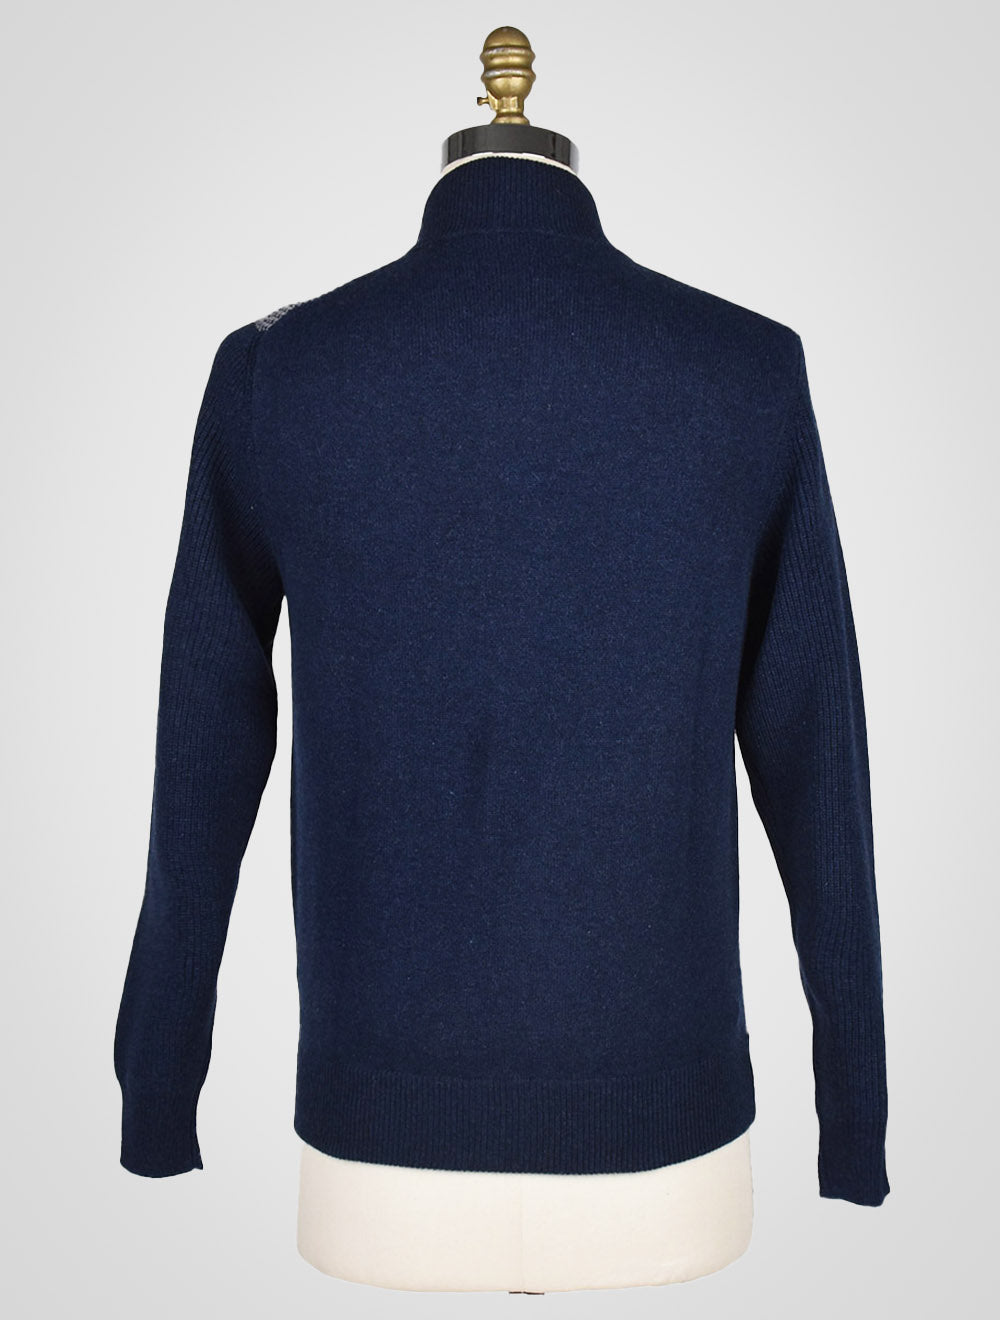 Cesare Attolini Blue Gray Cashmere Sweater Full zip